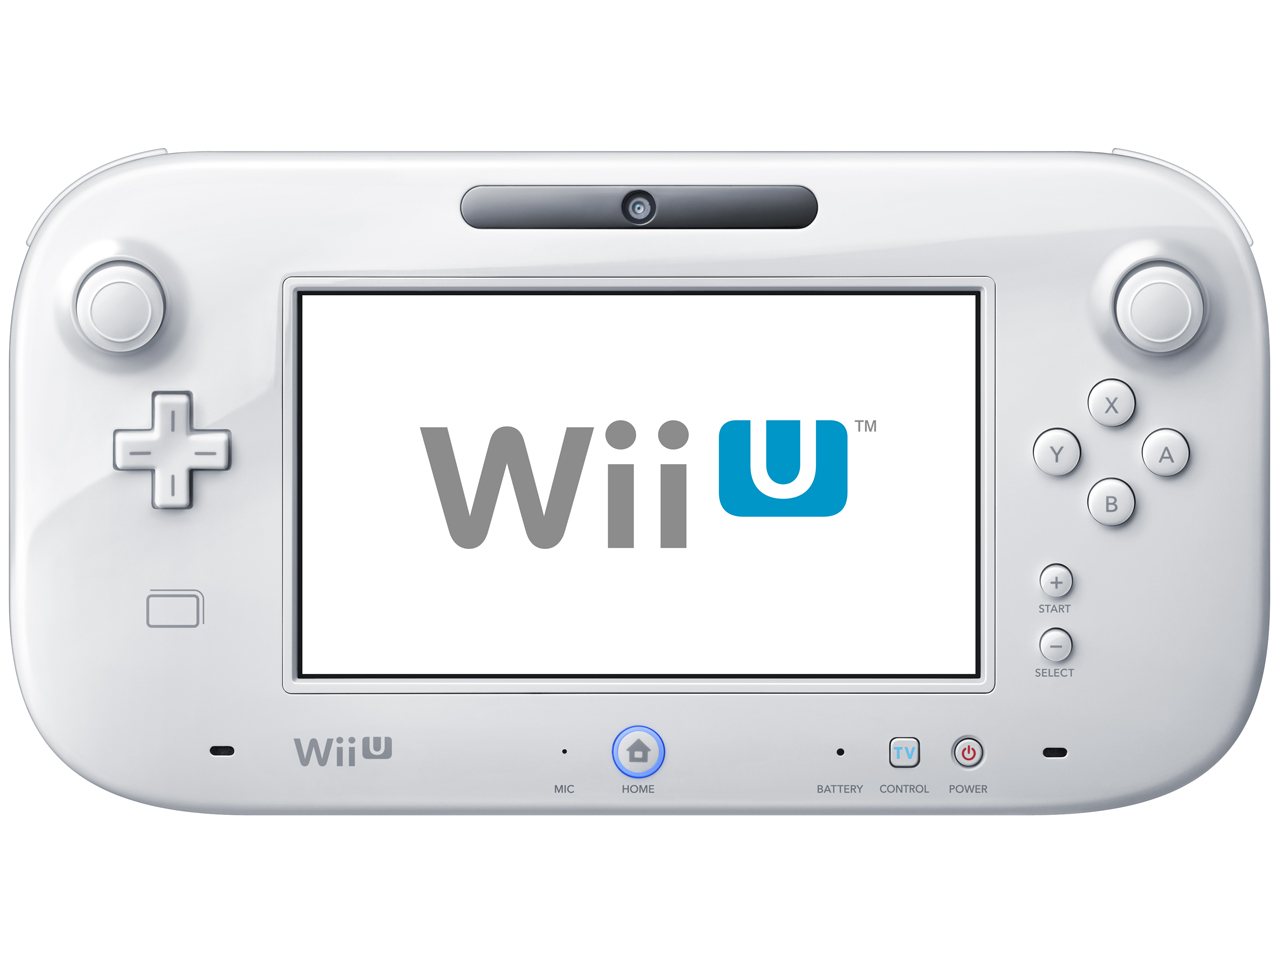 価格.com - 『本体 正面』 Wii U BASIC SET の製品画像